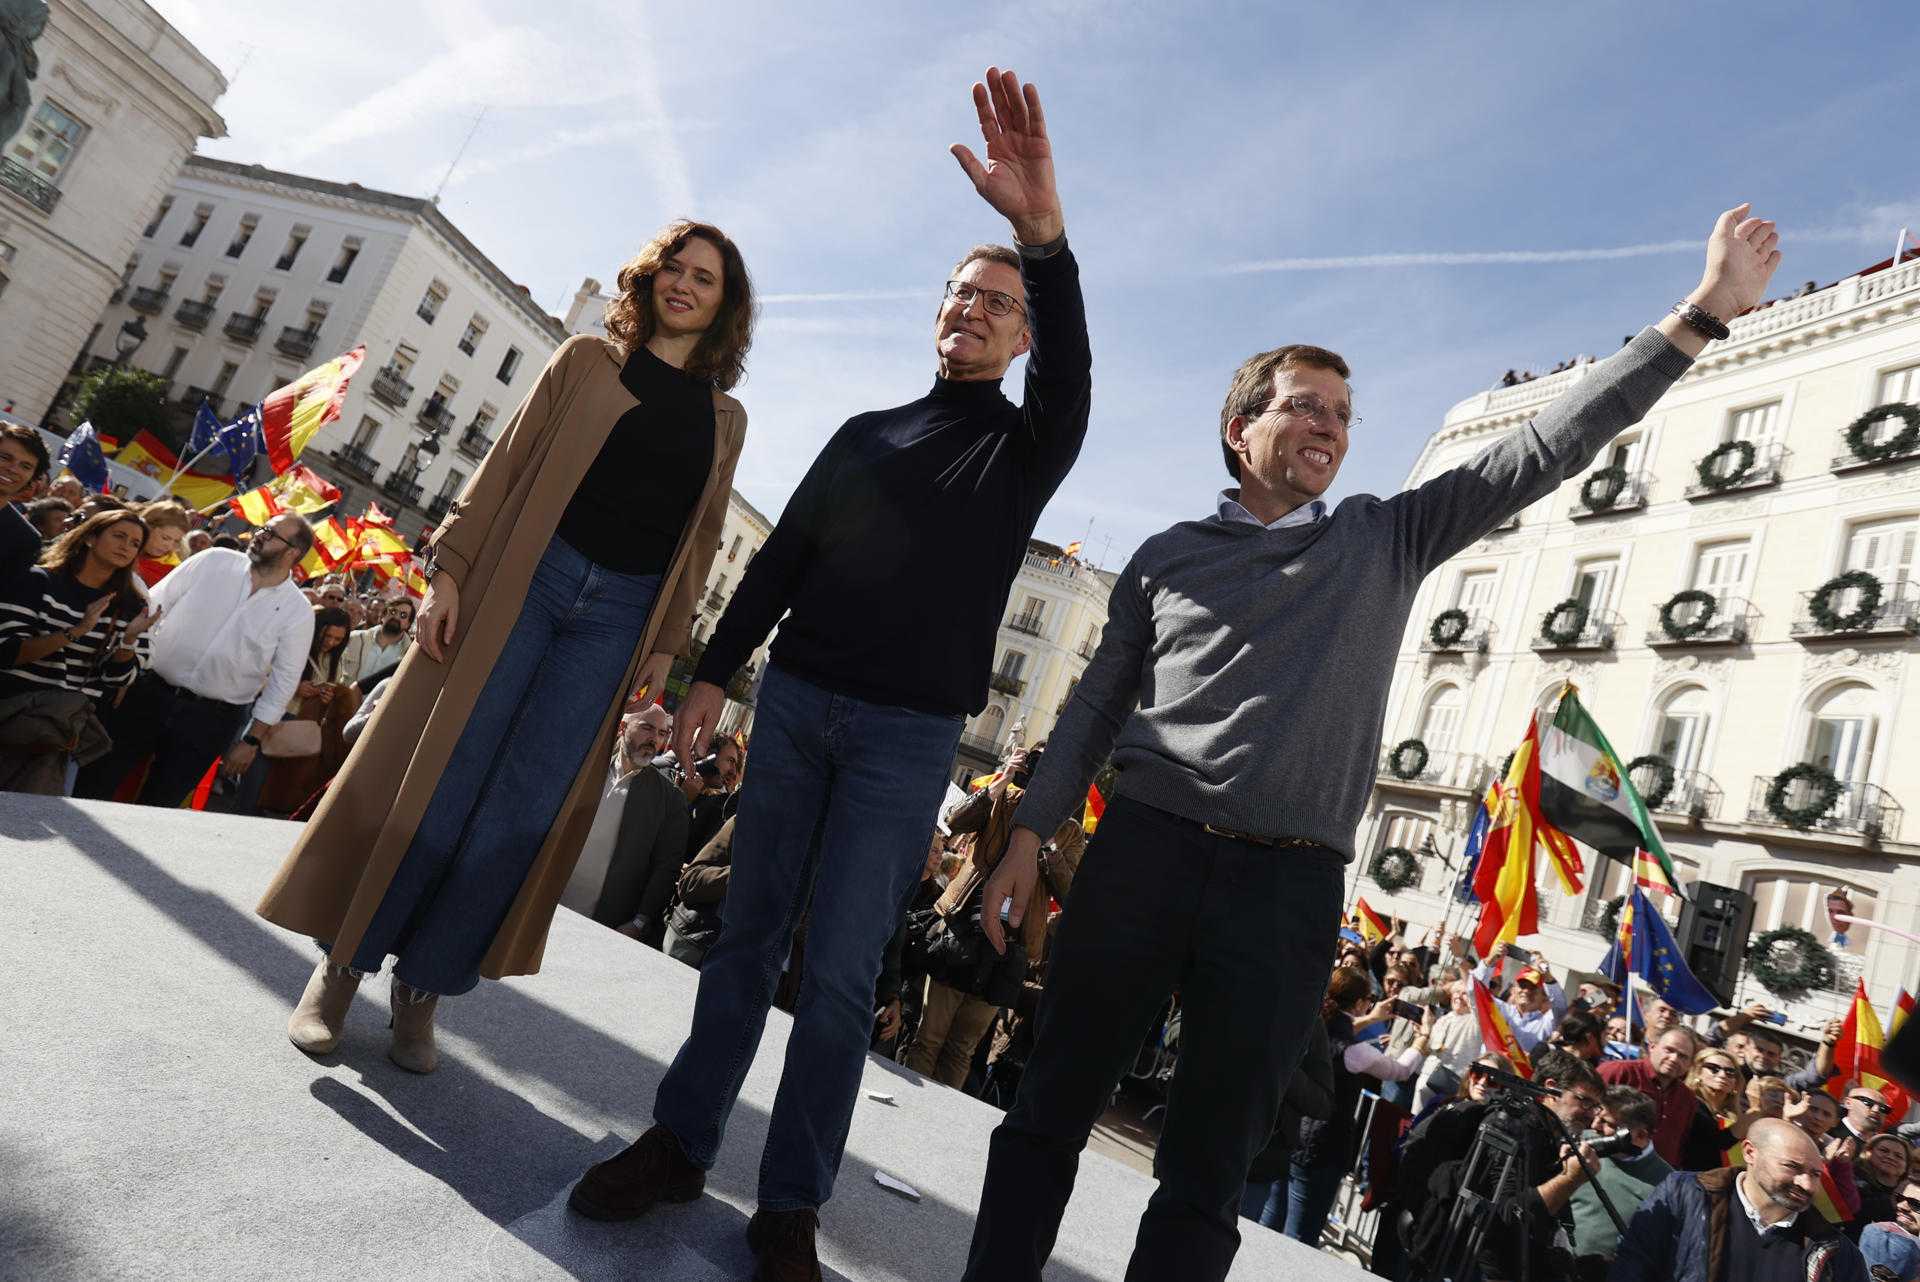 Alçament de Feijóo, Ayuso i Aznar contra l’amnistia a Madrid: “Retornarem cop per cop”